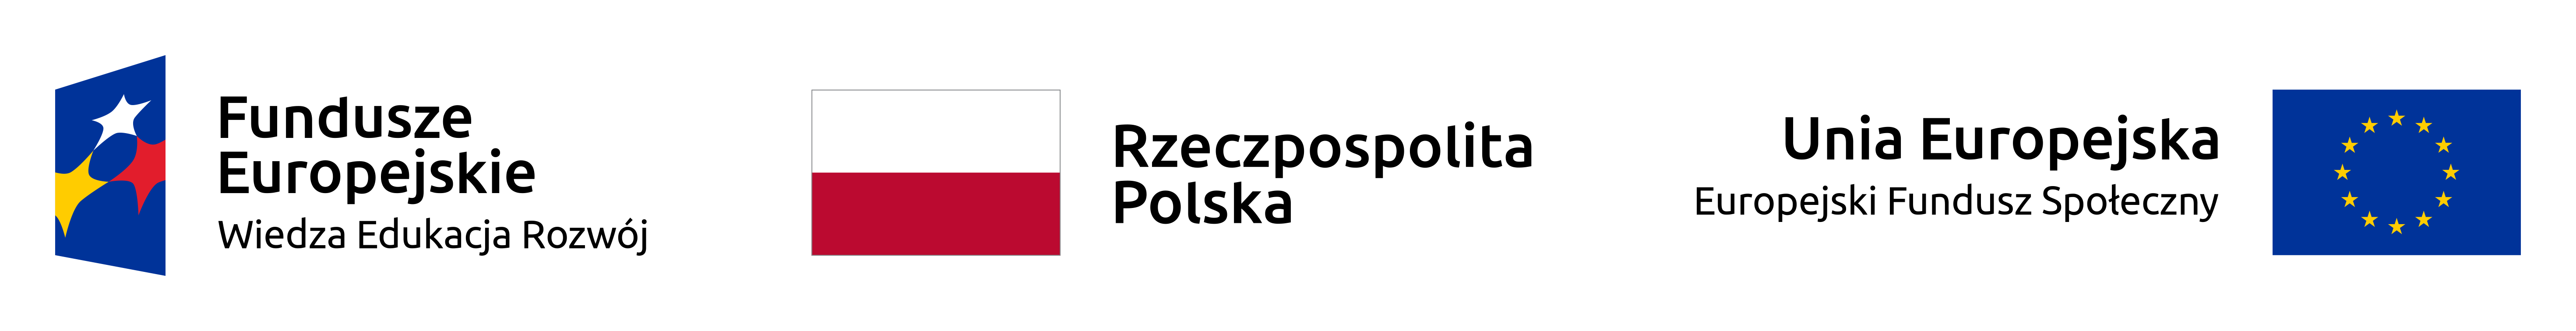 ue logo